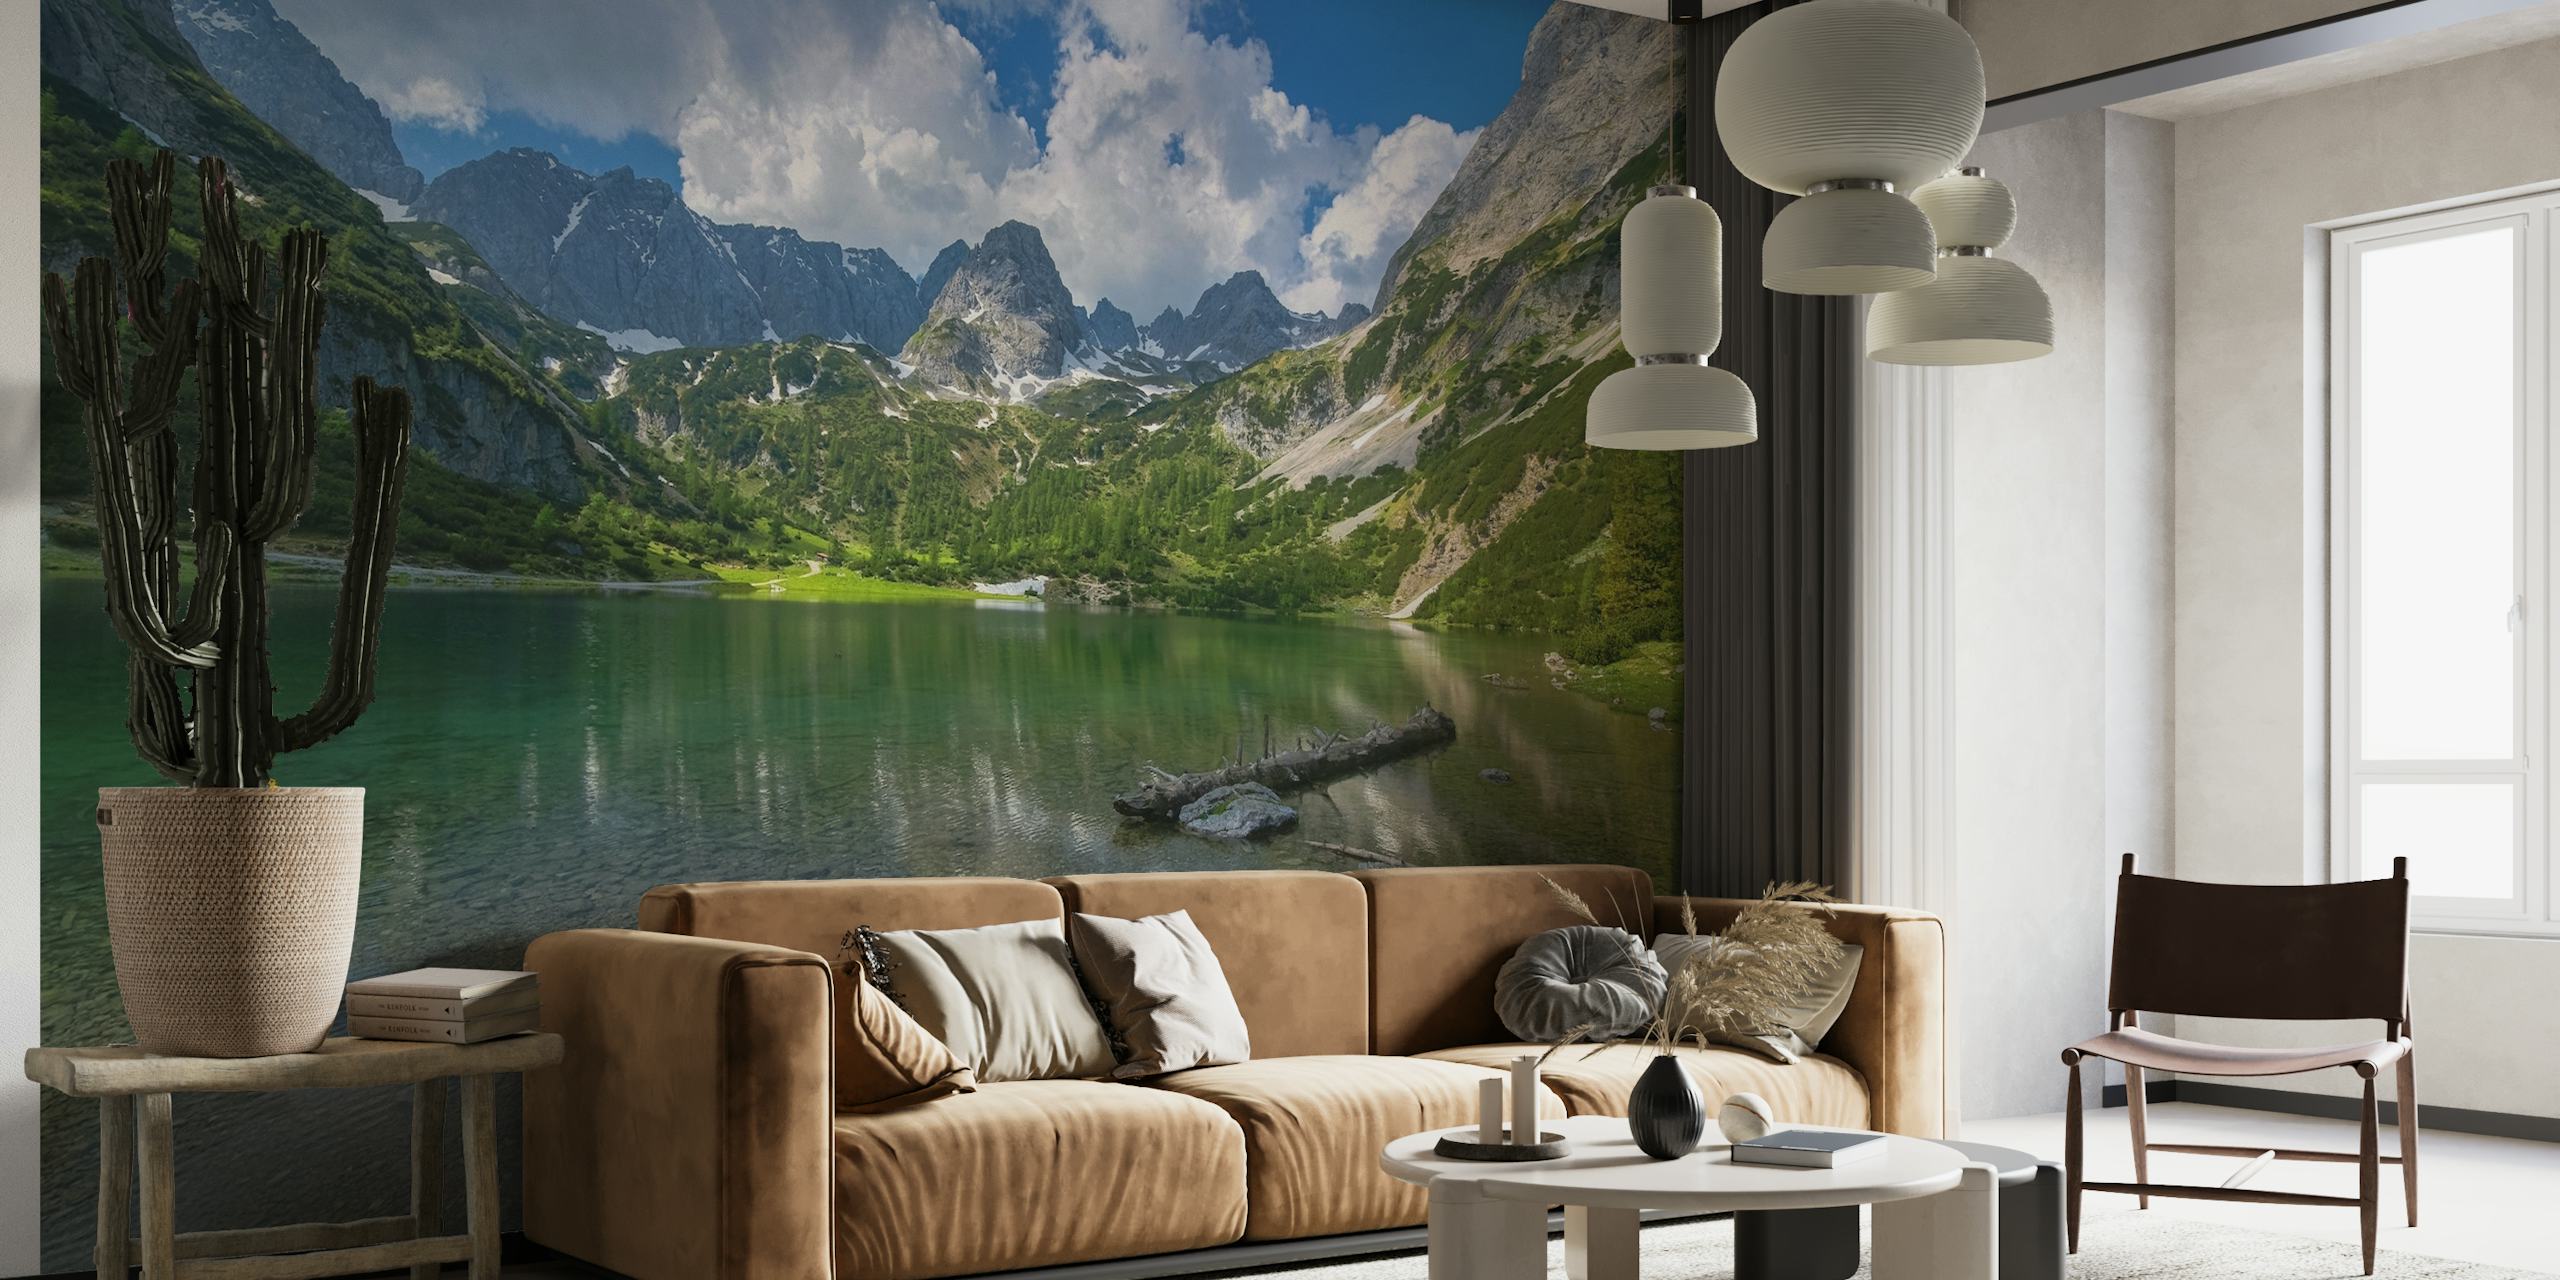 Papier peint mural de Seebensea au Tyrol représentant un lac alpin tranquille avec des reflets de montagne